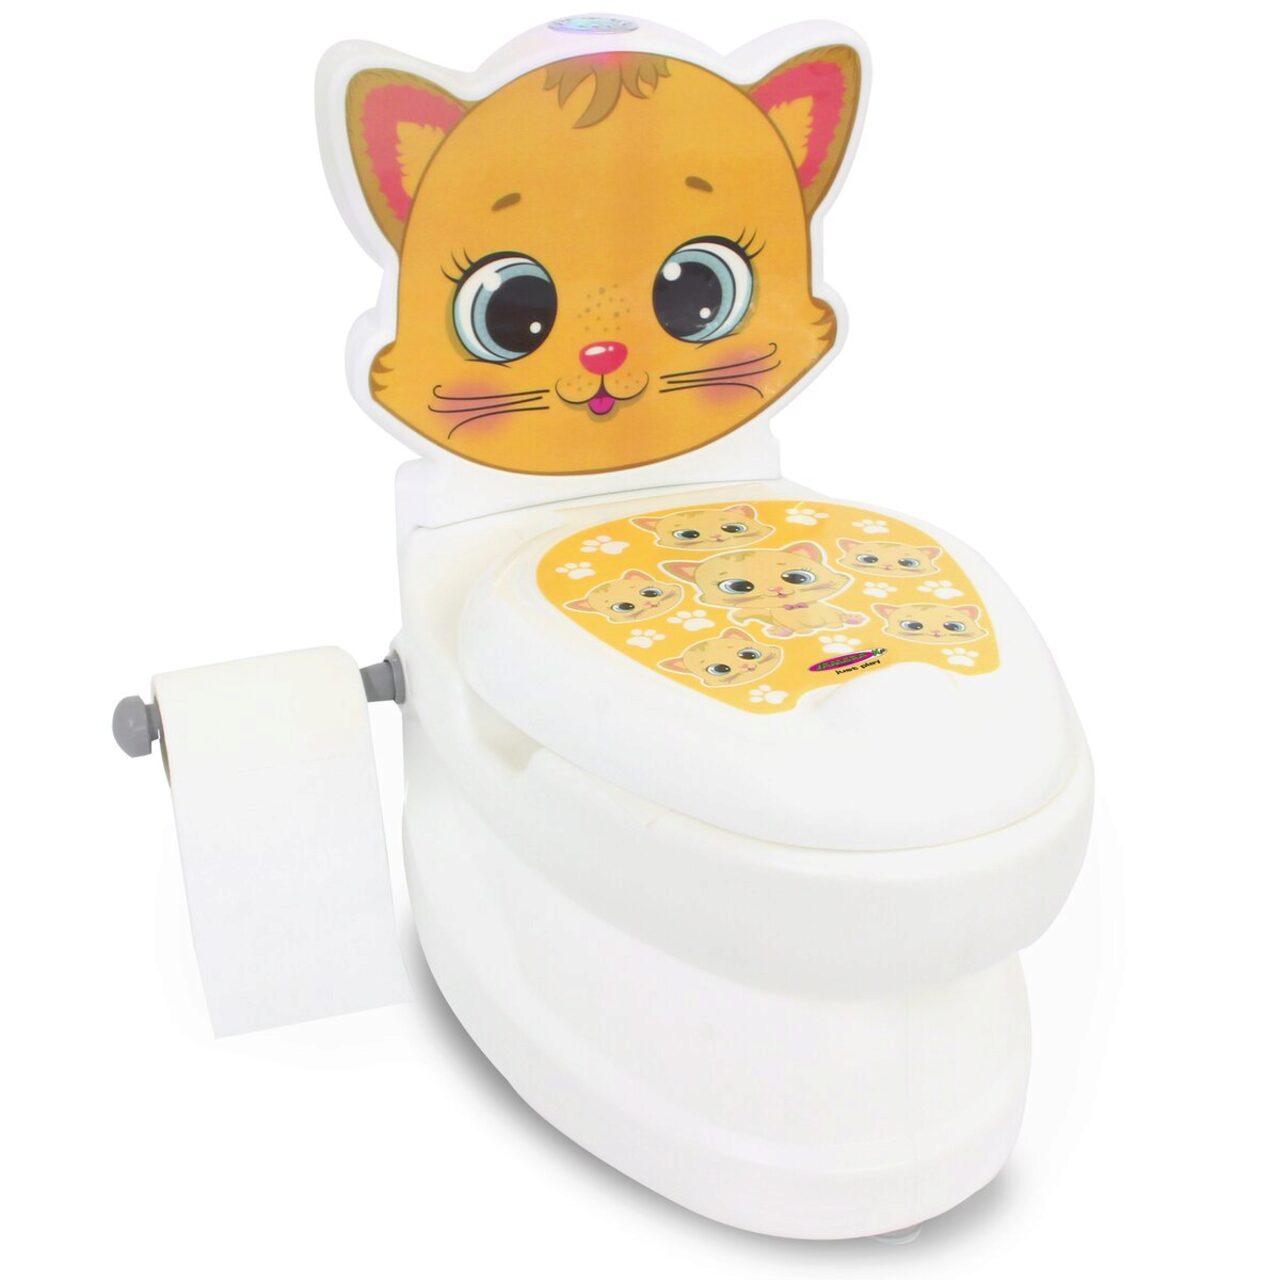 Meine Spülsound kleine Toilettenpapierhalter mit JAMARA Toilette Katze 460955 und